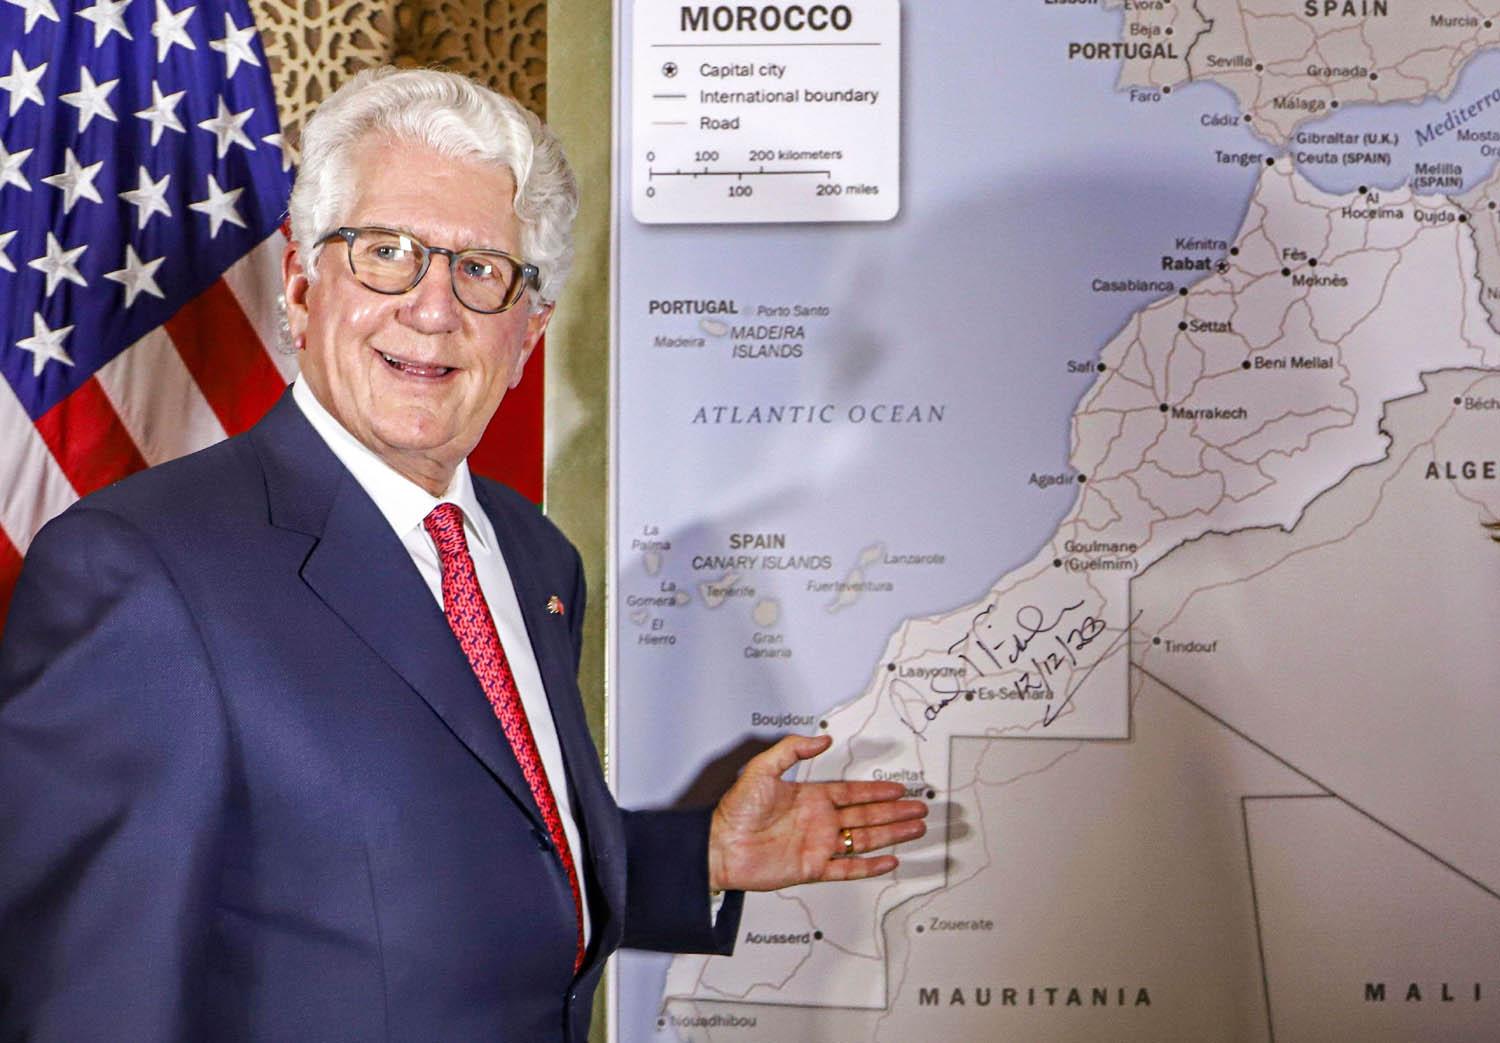 القرار الأمريكي بسيادة المغرب على الصحراء يجبر الأطراف الأخرى على استئناف المفاوضات